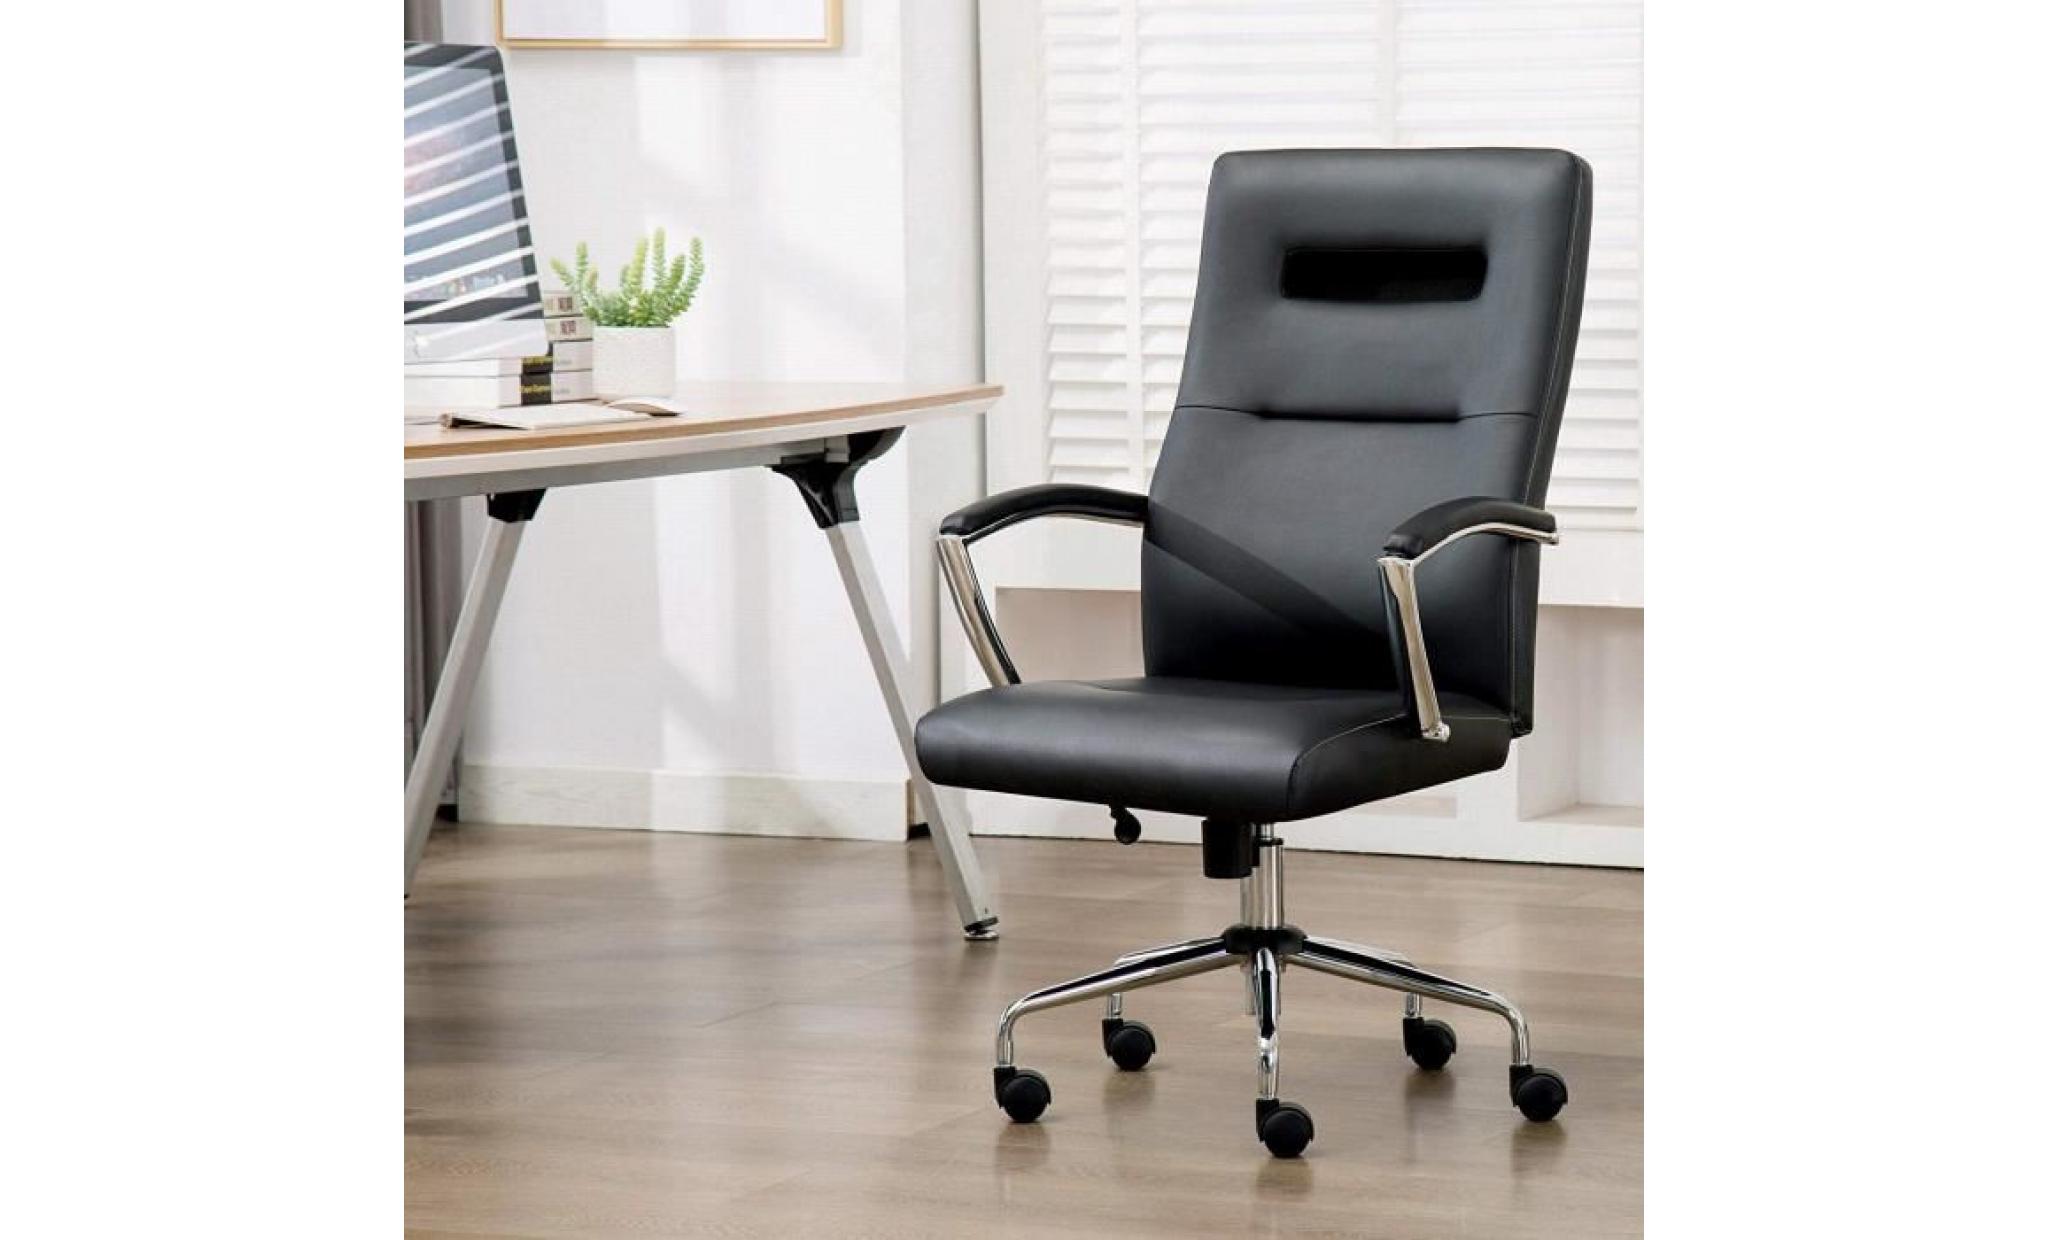 chaise de bureau confortable   fauteuil de bureau   pu siège de bureau   hauteur réglable  gris  intimate wm heart pas cher